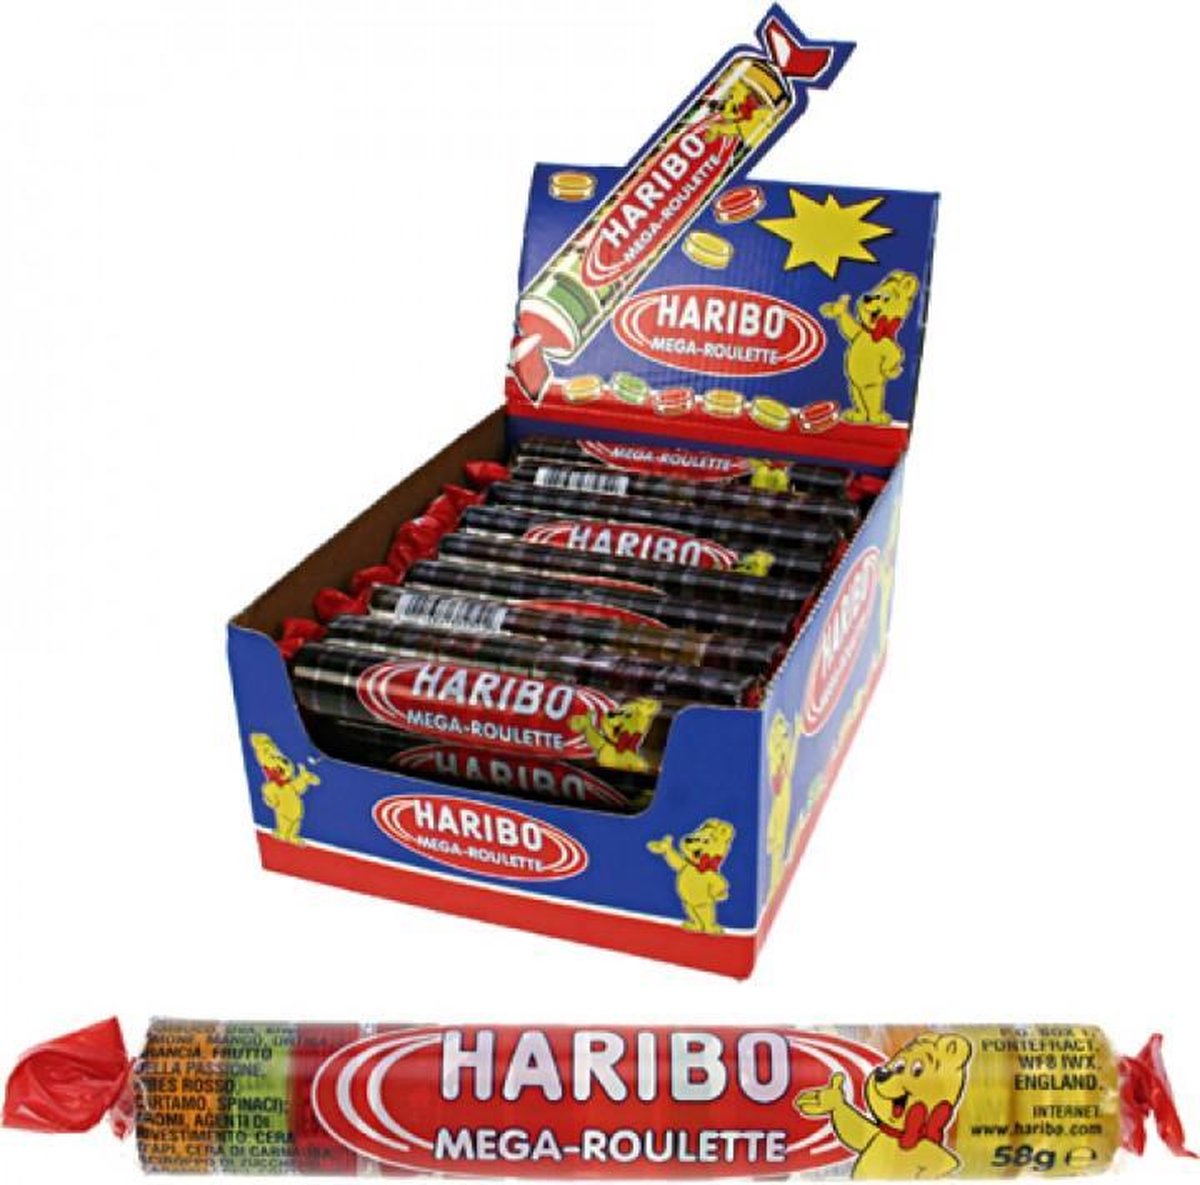 Haribo Box Mega-Roulette 24/1.59oz #11013 